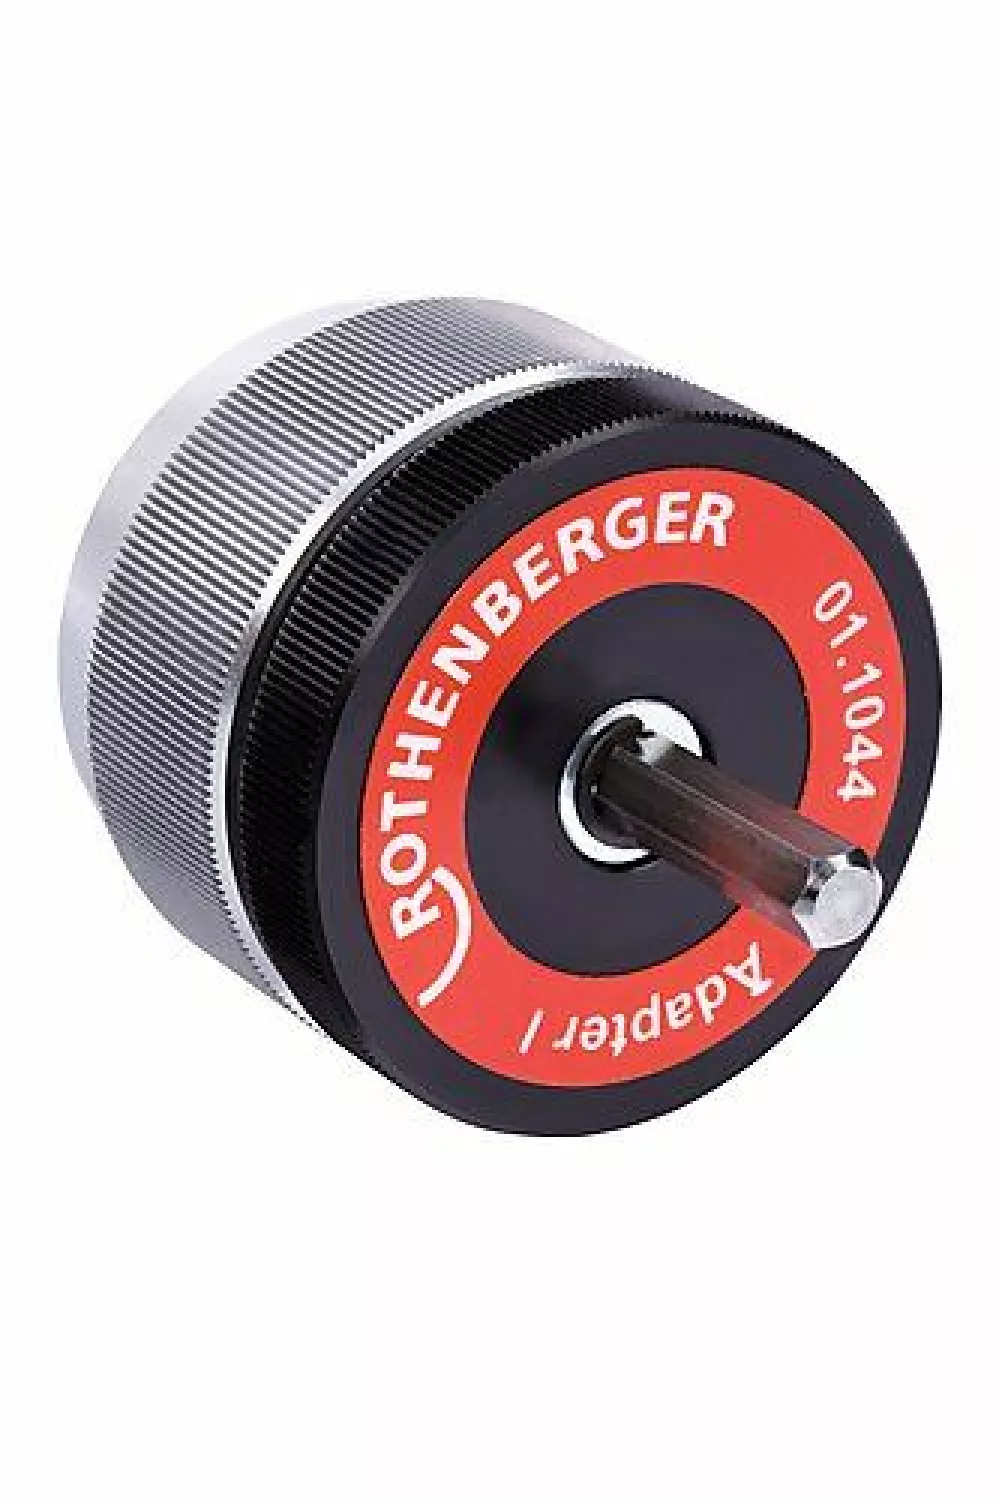 Rothenberger 11044 Ontbramer Adapter 1 voor 1500000237 Ontbramer-image